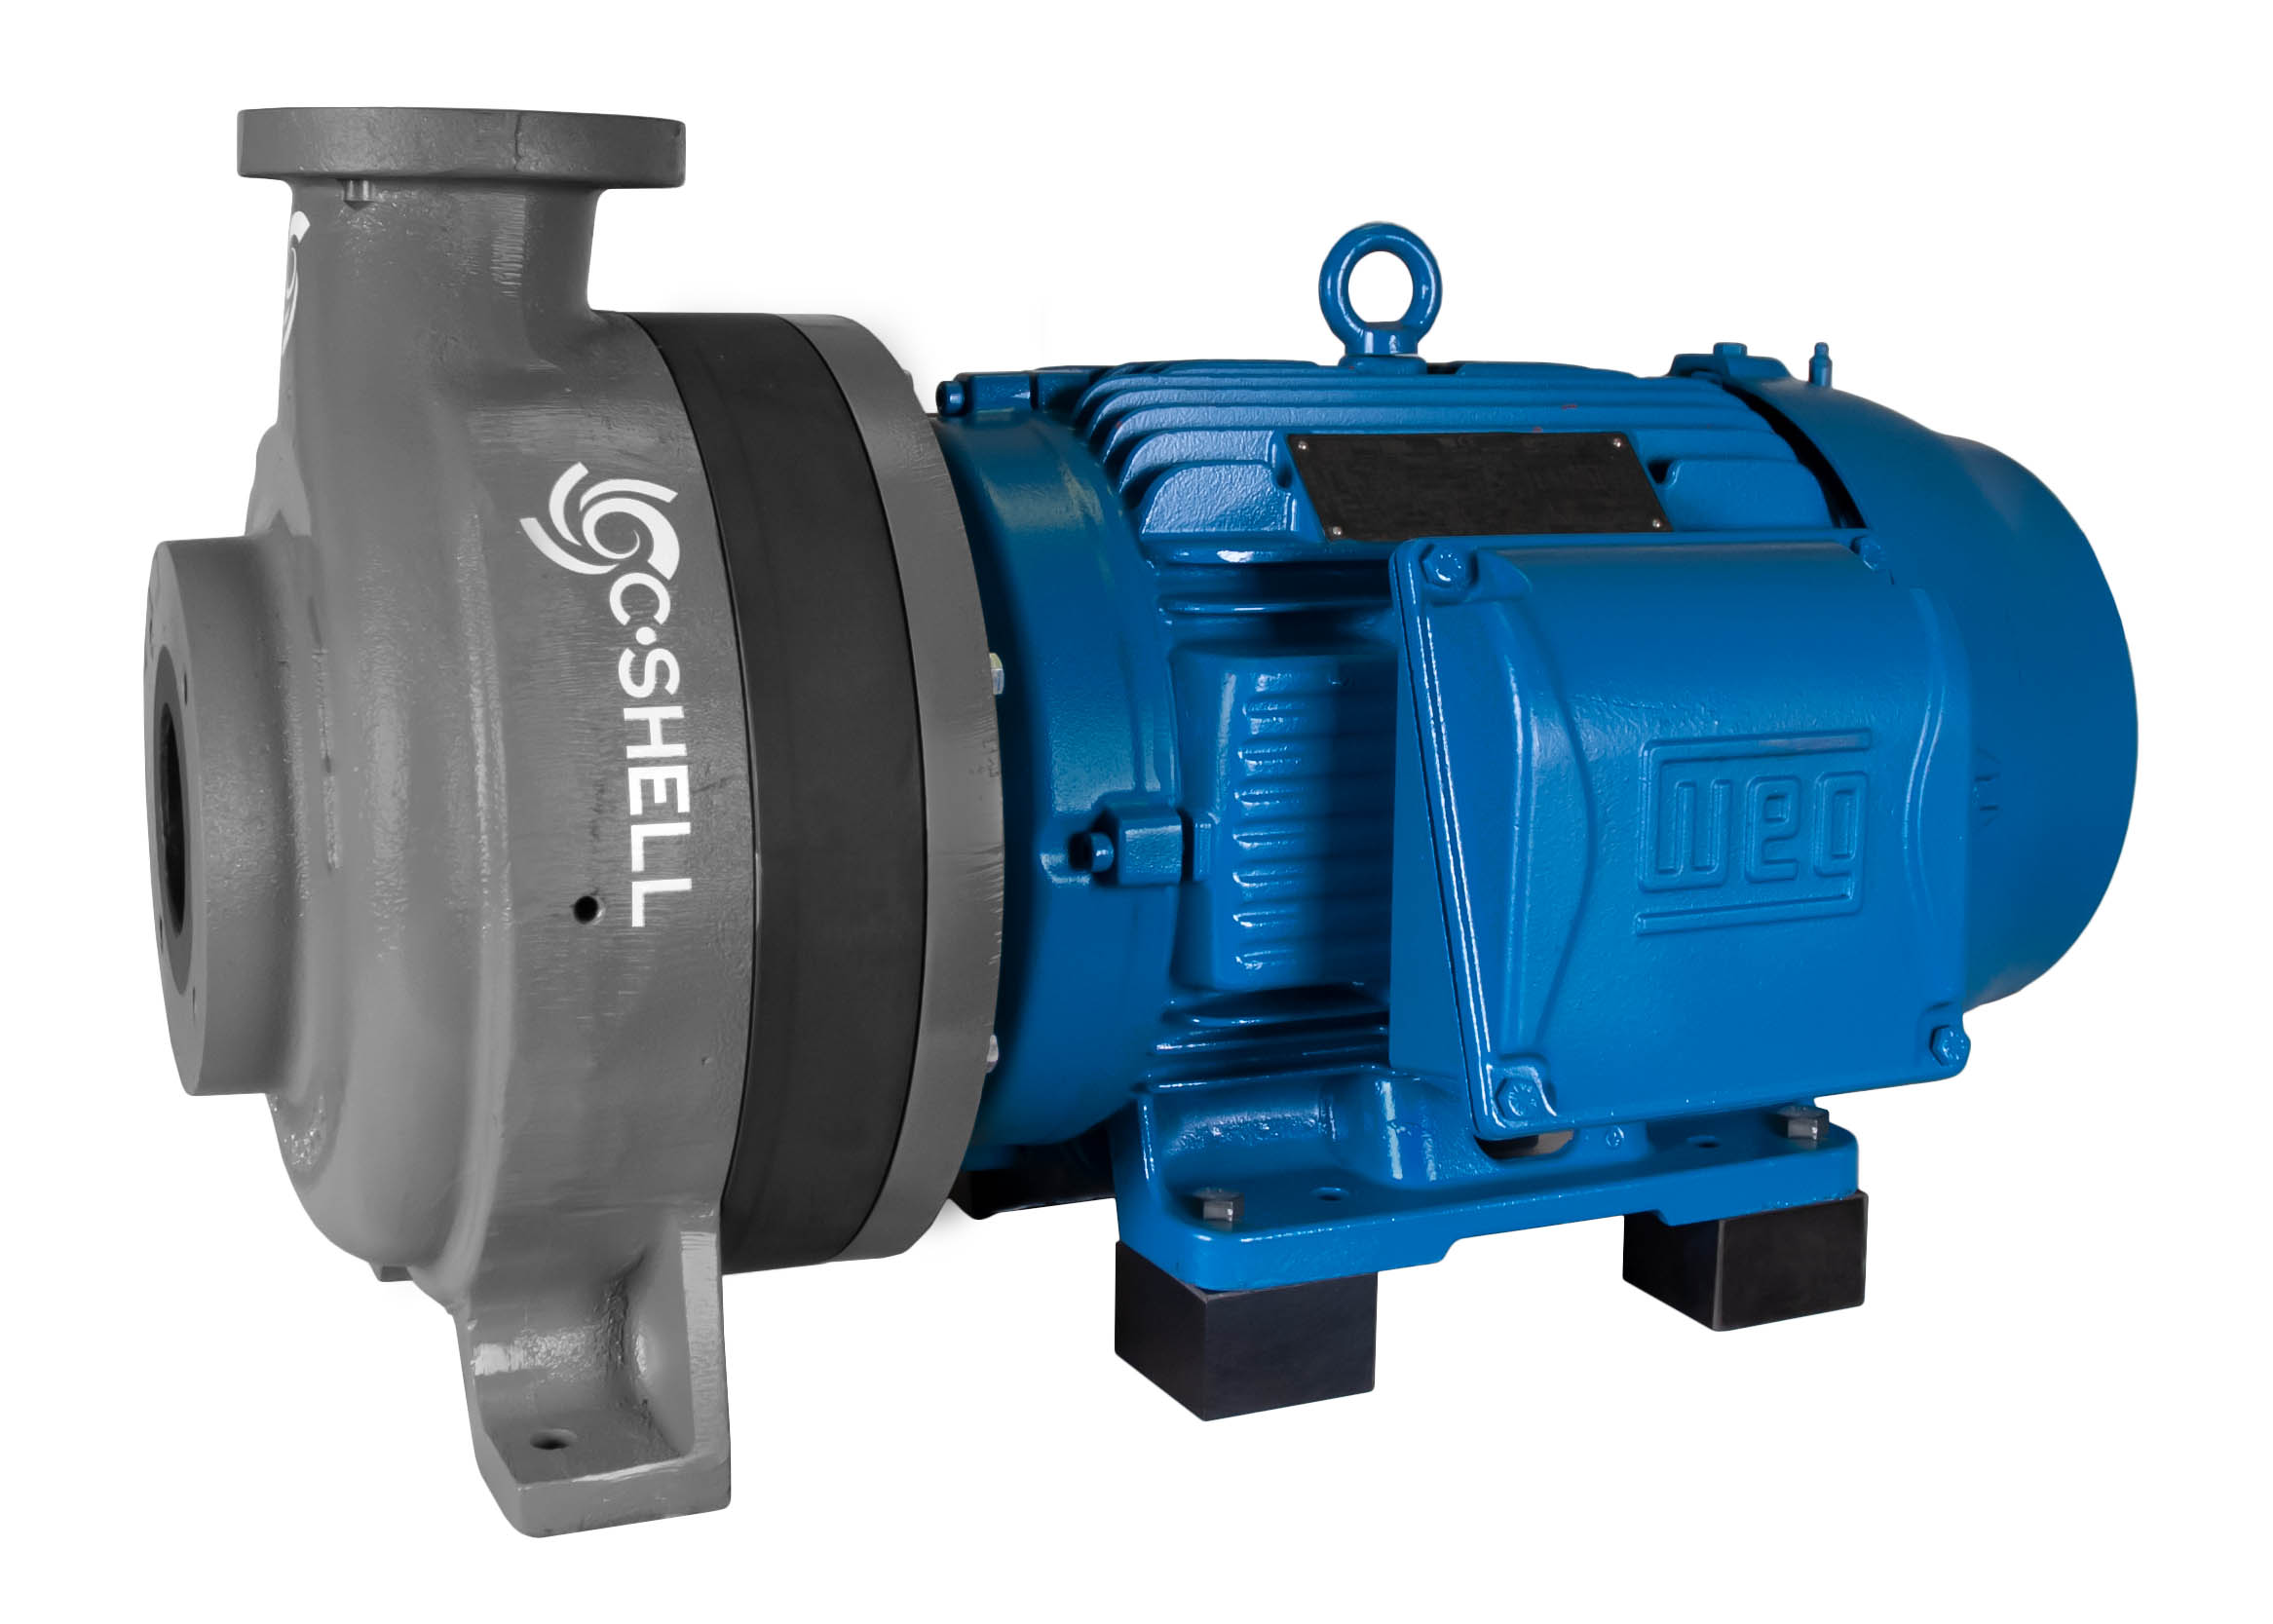 파란색 WEG 모터가있는 C-Shell 3x2-10 펌프 직각보기